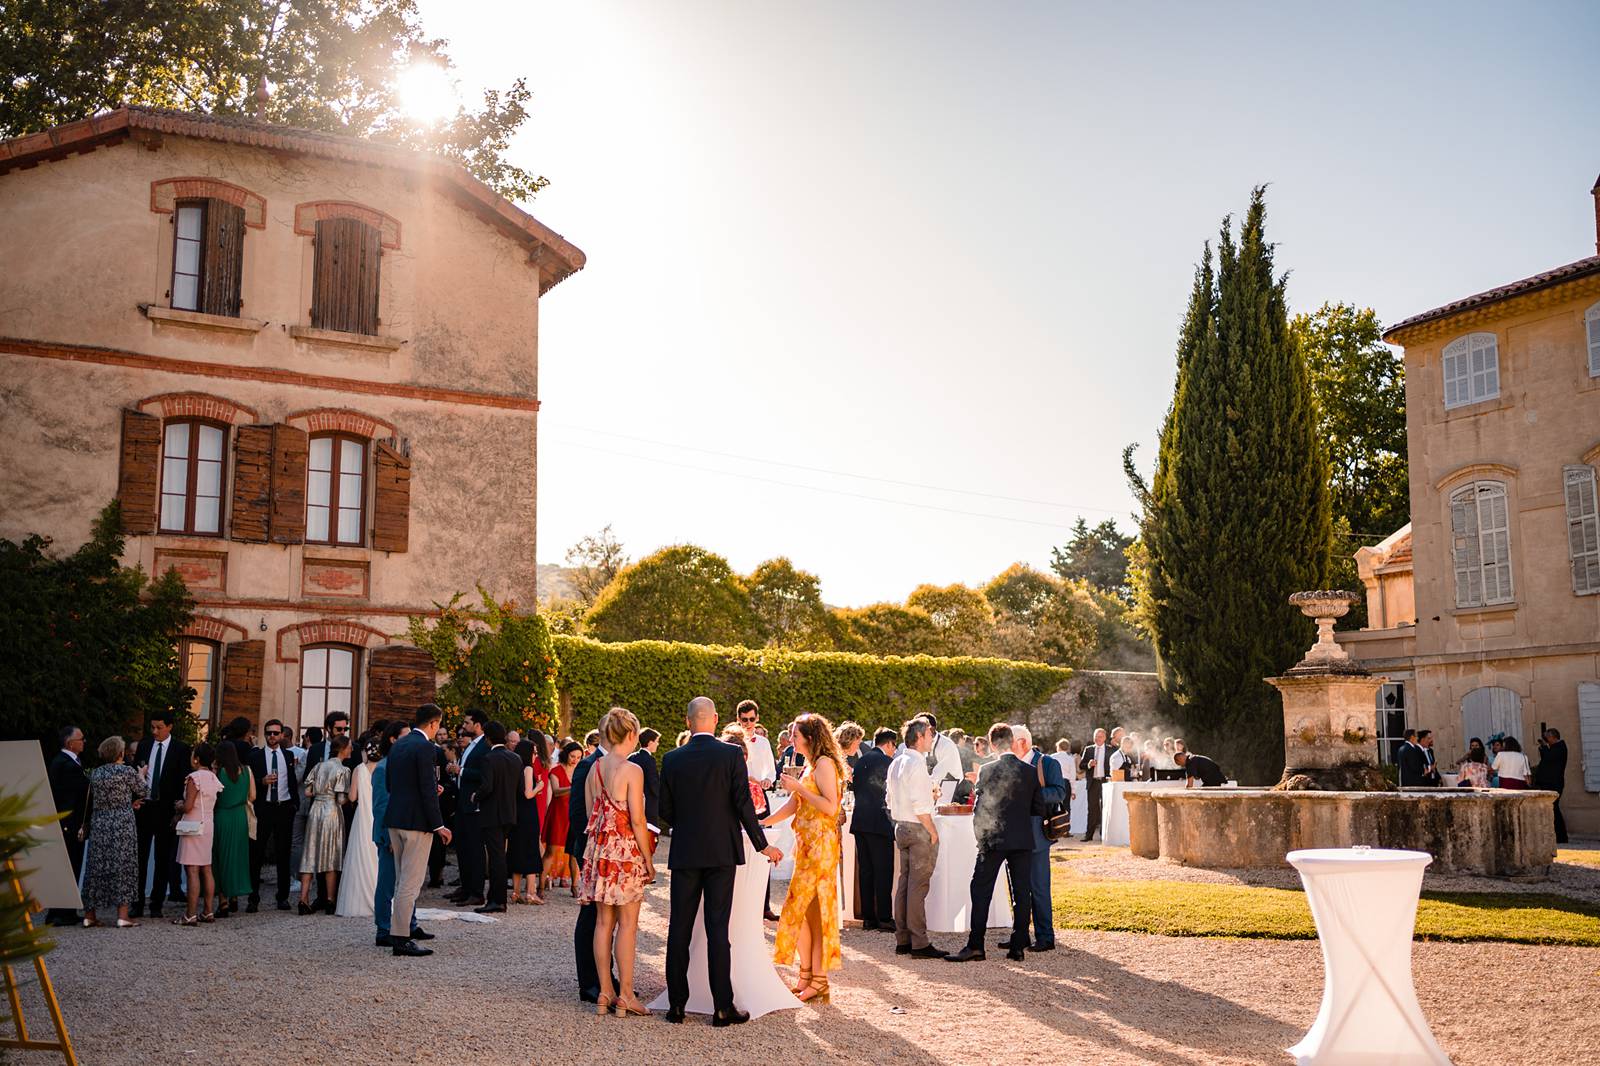 Un teaser du mariage religieux de Delphine et Edouard à Lourmarin puis au Château d'Arnajon en Provence sous tente. Alexandre Roschewitz, photographe mariage.